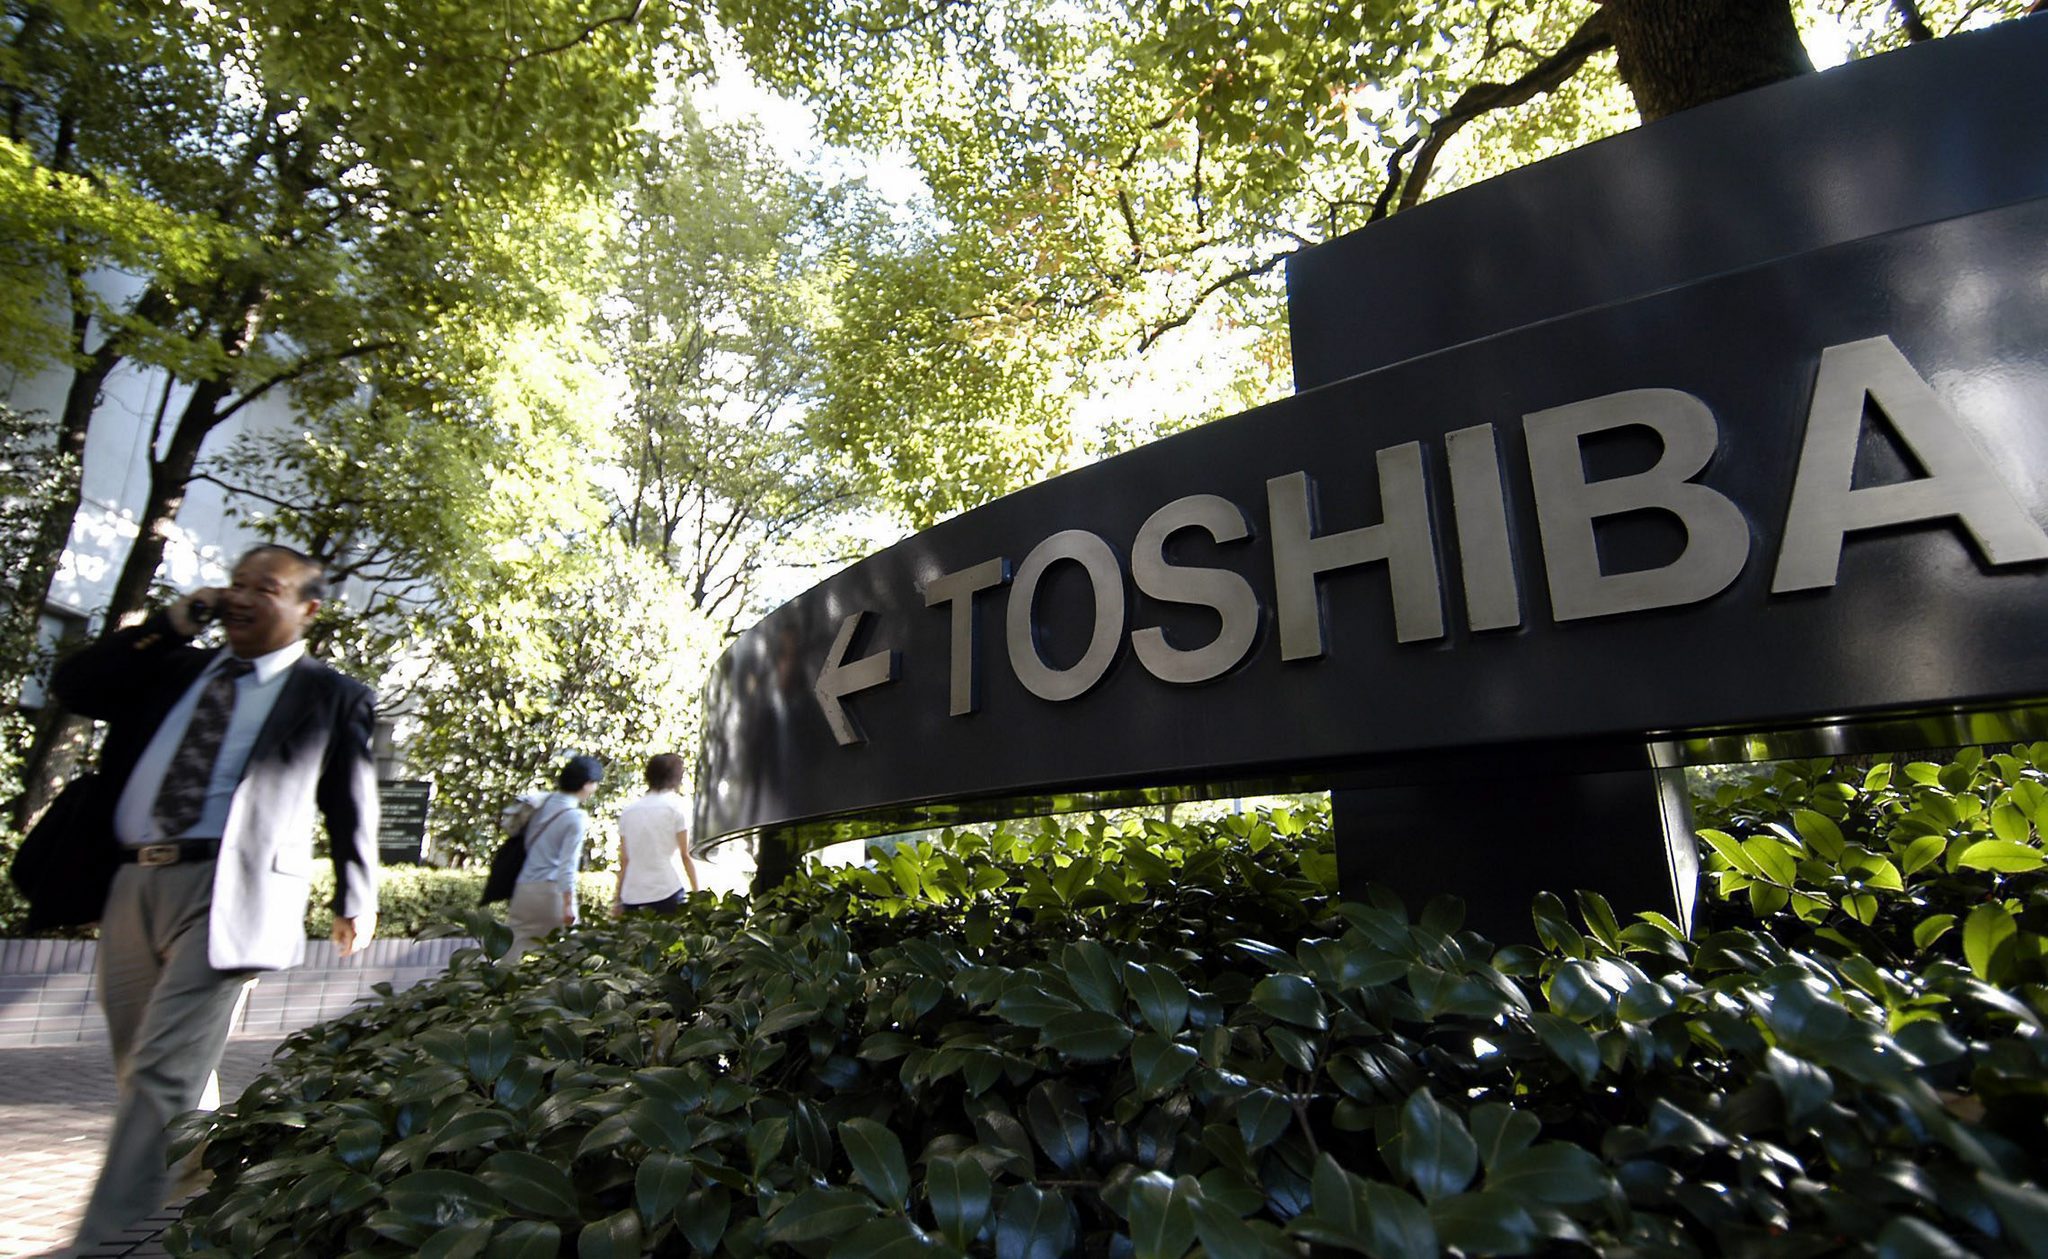 Τέλος εποχής για την Toshiba. Εκτός Χρηματιστηρίου του Τόκιο μετά από 74 χρόνια. Τα σκάνδαλα και η εξαγορά